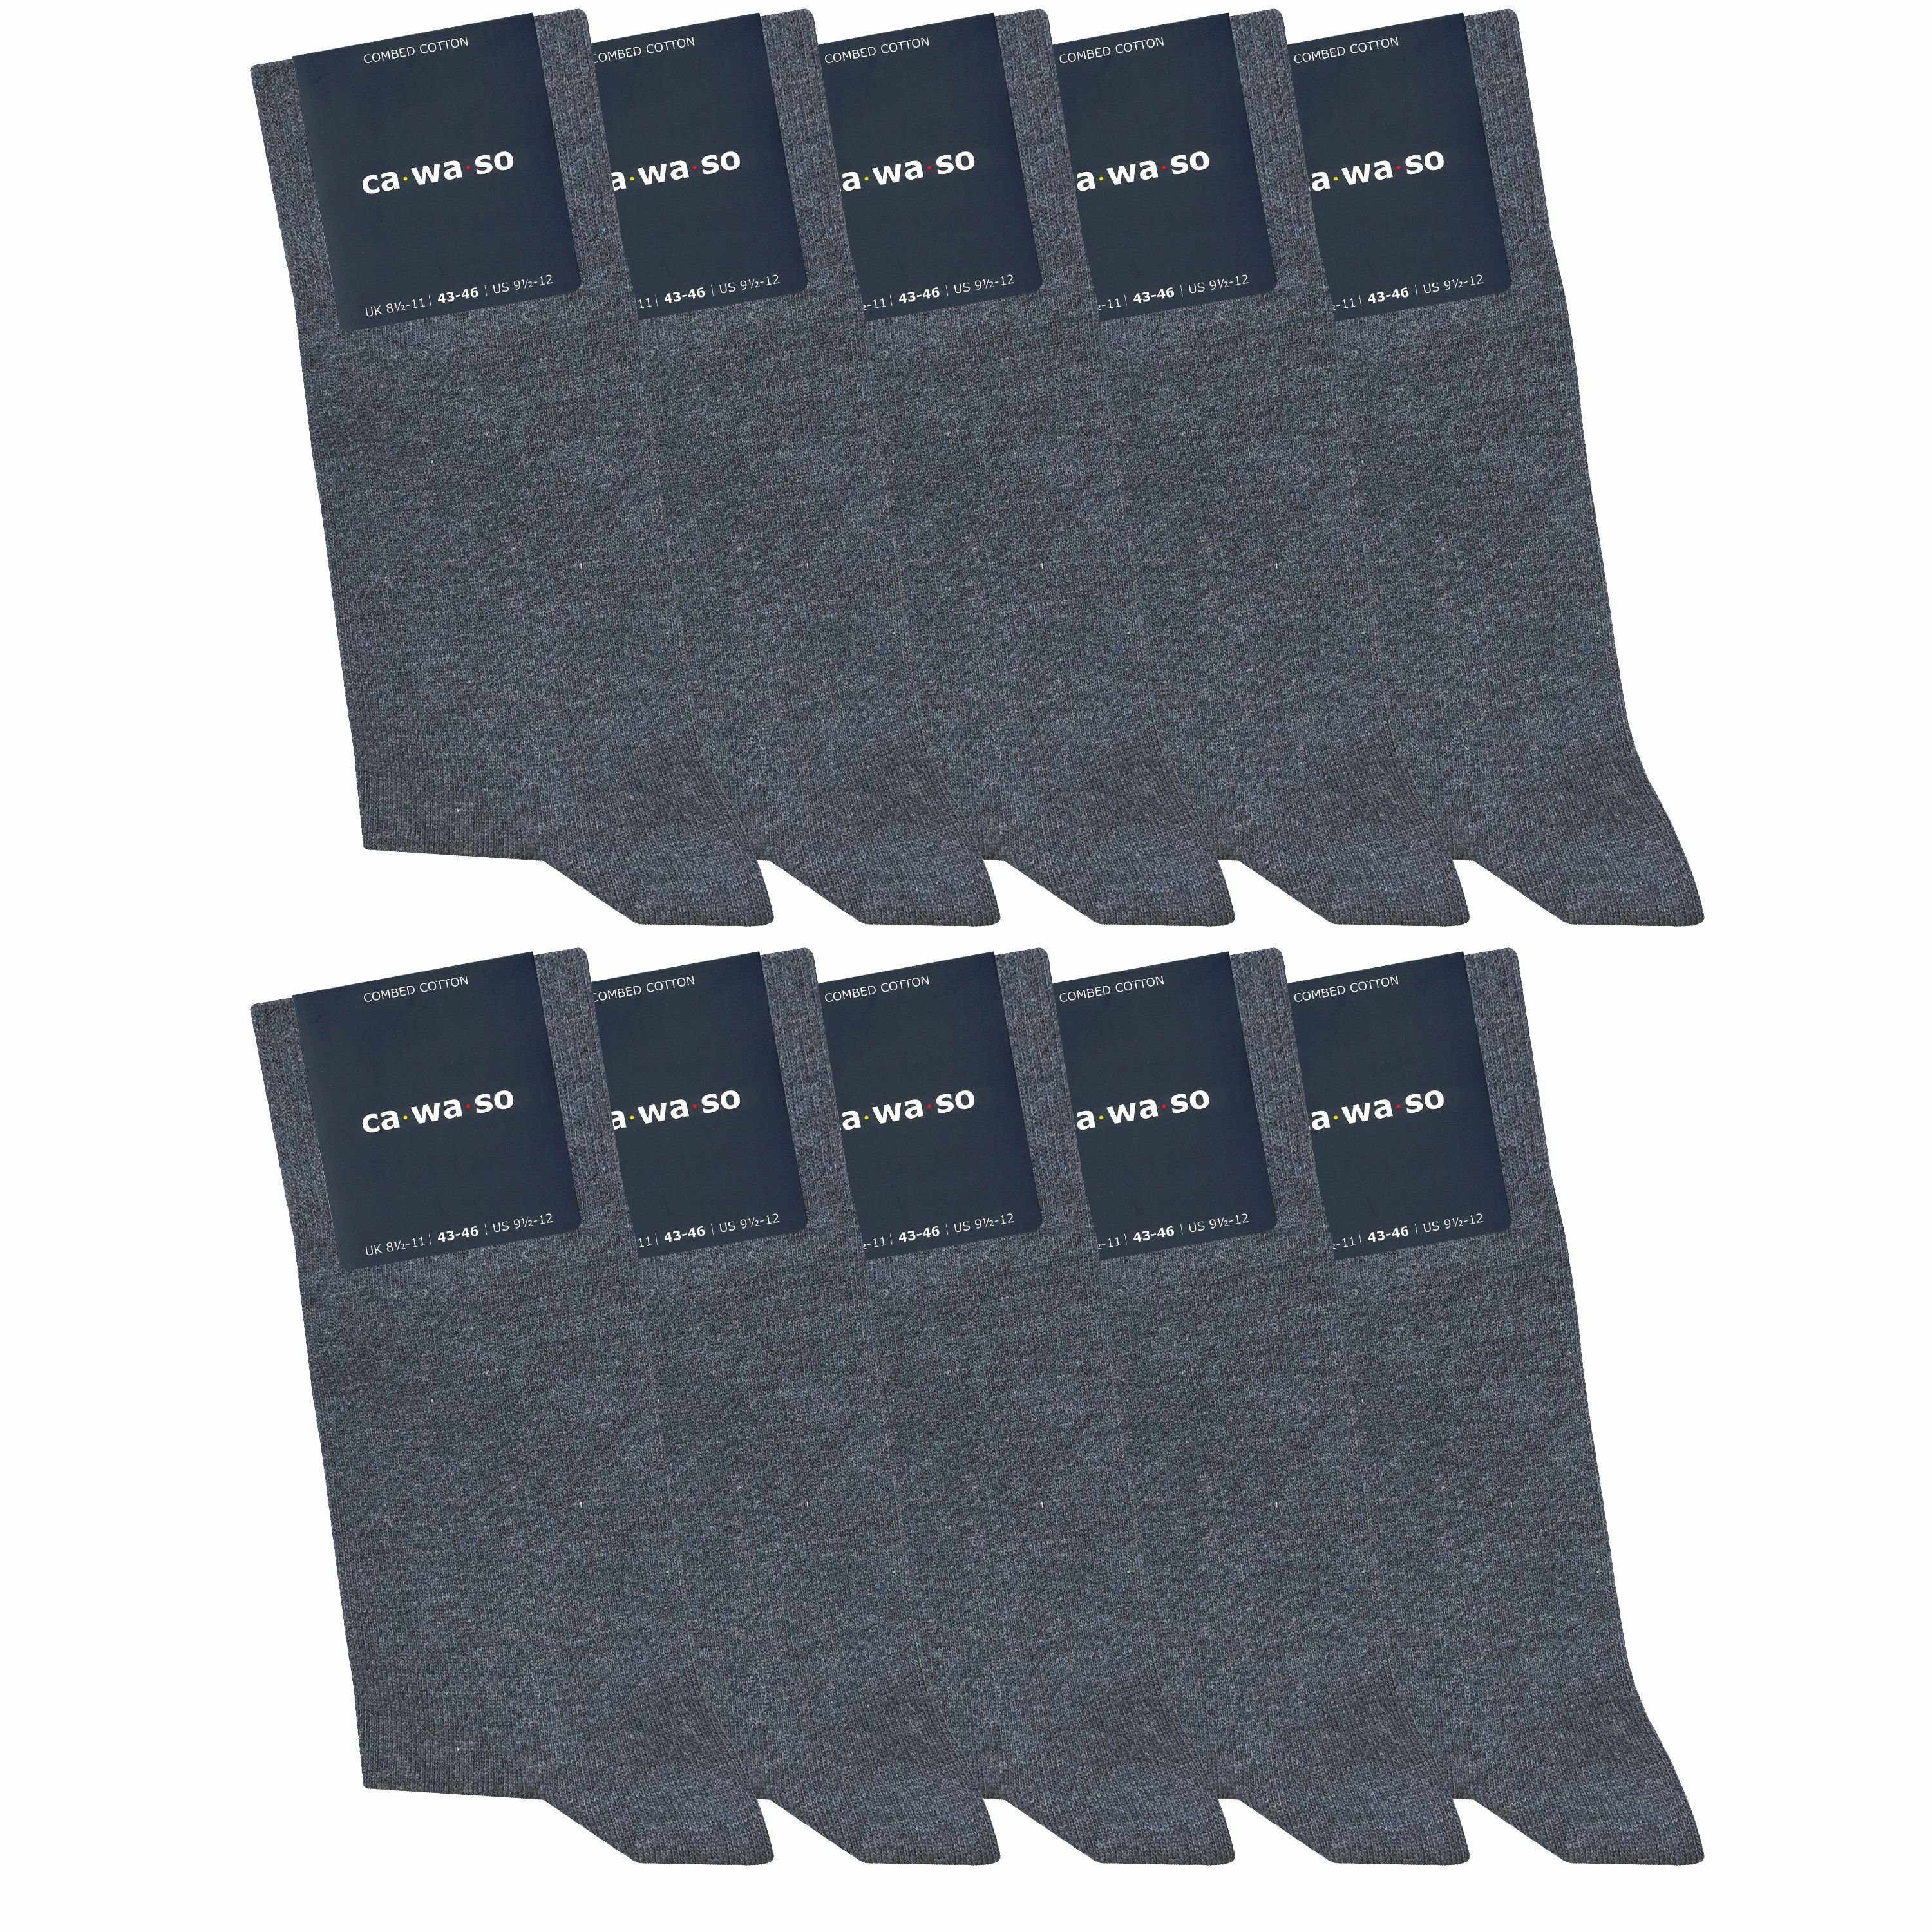 ca·wa·so Socken für Damen & Herren - bequem & weich - aus doppelt gekämmter Baumwolle (10 Paar) Socken in schwarz, bunt, grau, blau und weiteren Farben jeans